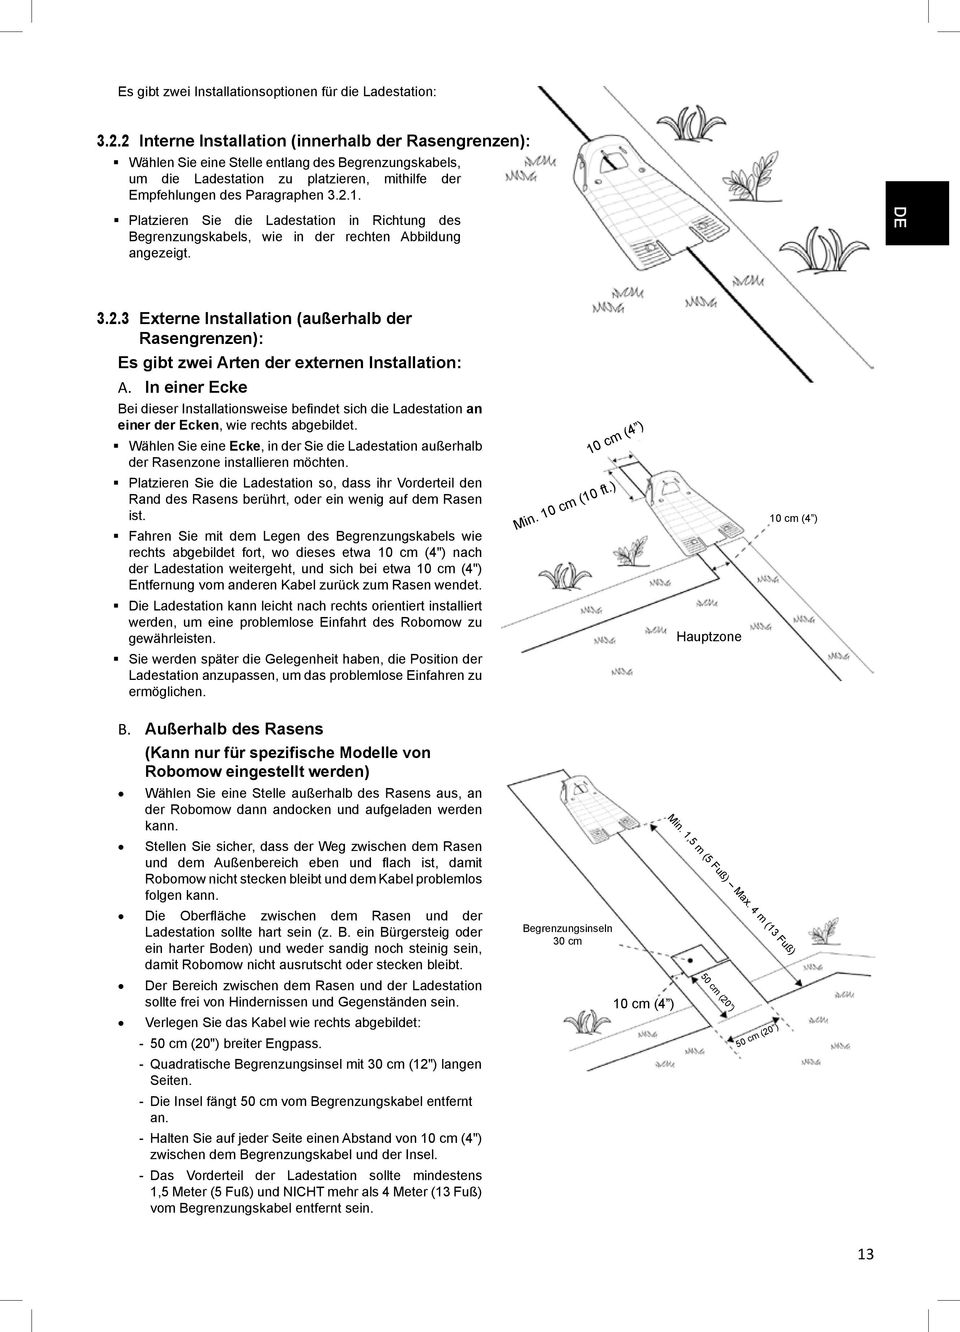 Platzieren Sie die Ladestation in Richtung des Begrenzungskabels, wie in der rechten Abbildung angezeigt. DE 3.2.